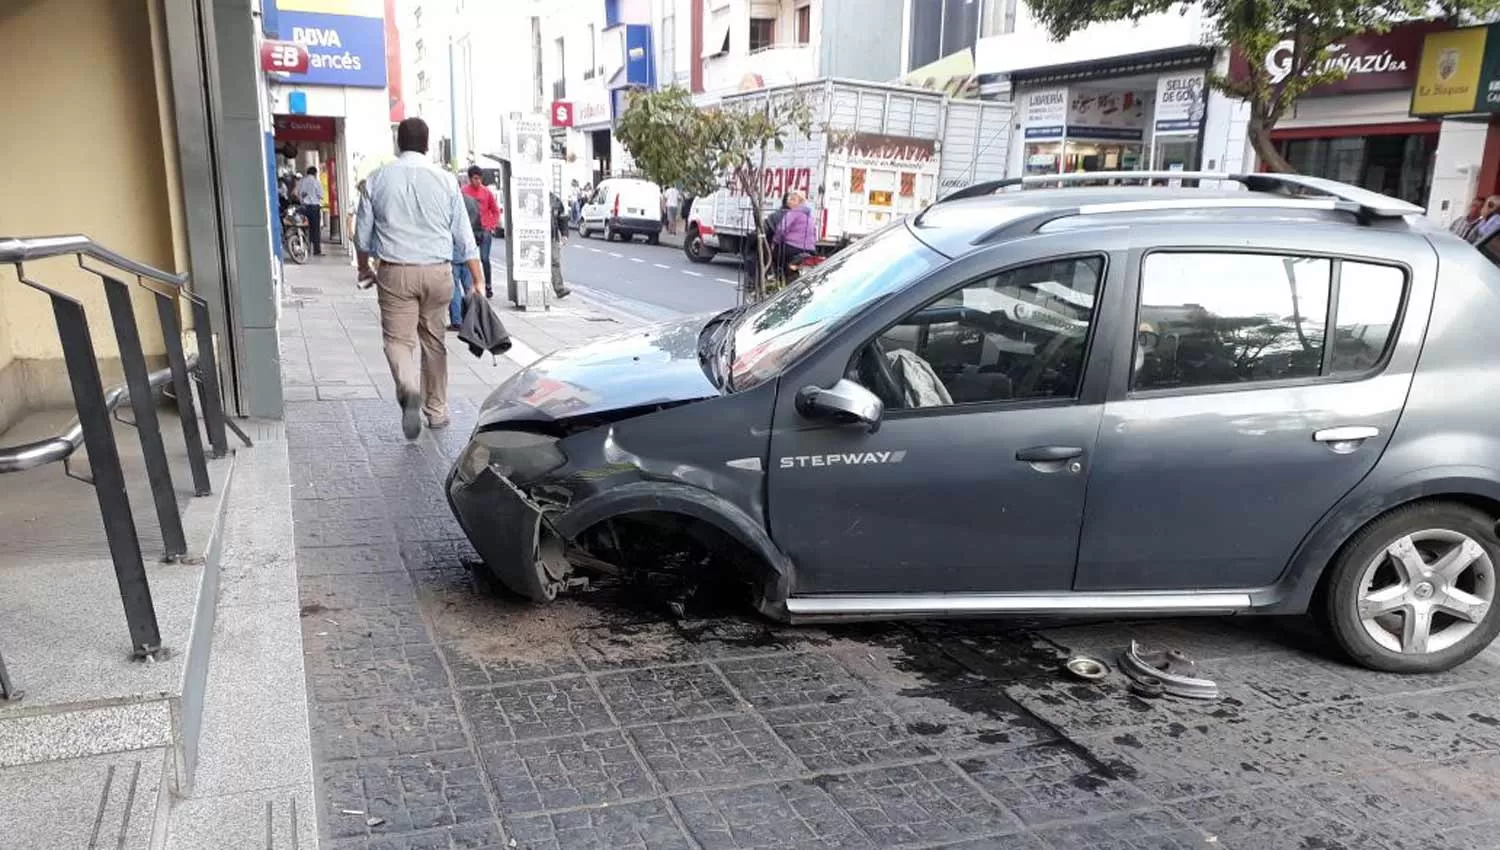 UN SUSTO. El automóvil perdió su rueda delantera izquierda y quedó a metros de la puerta del banco. LA GACETA / FOTO DE ANALÍA JARAMILLO